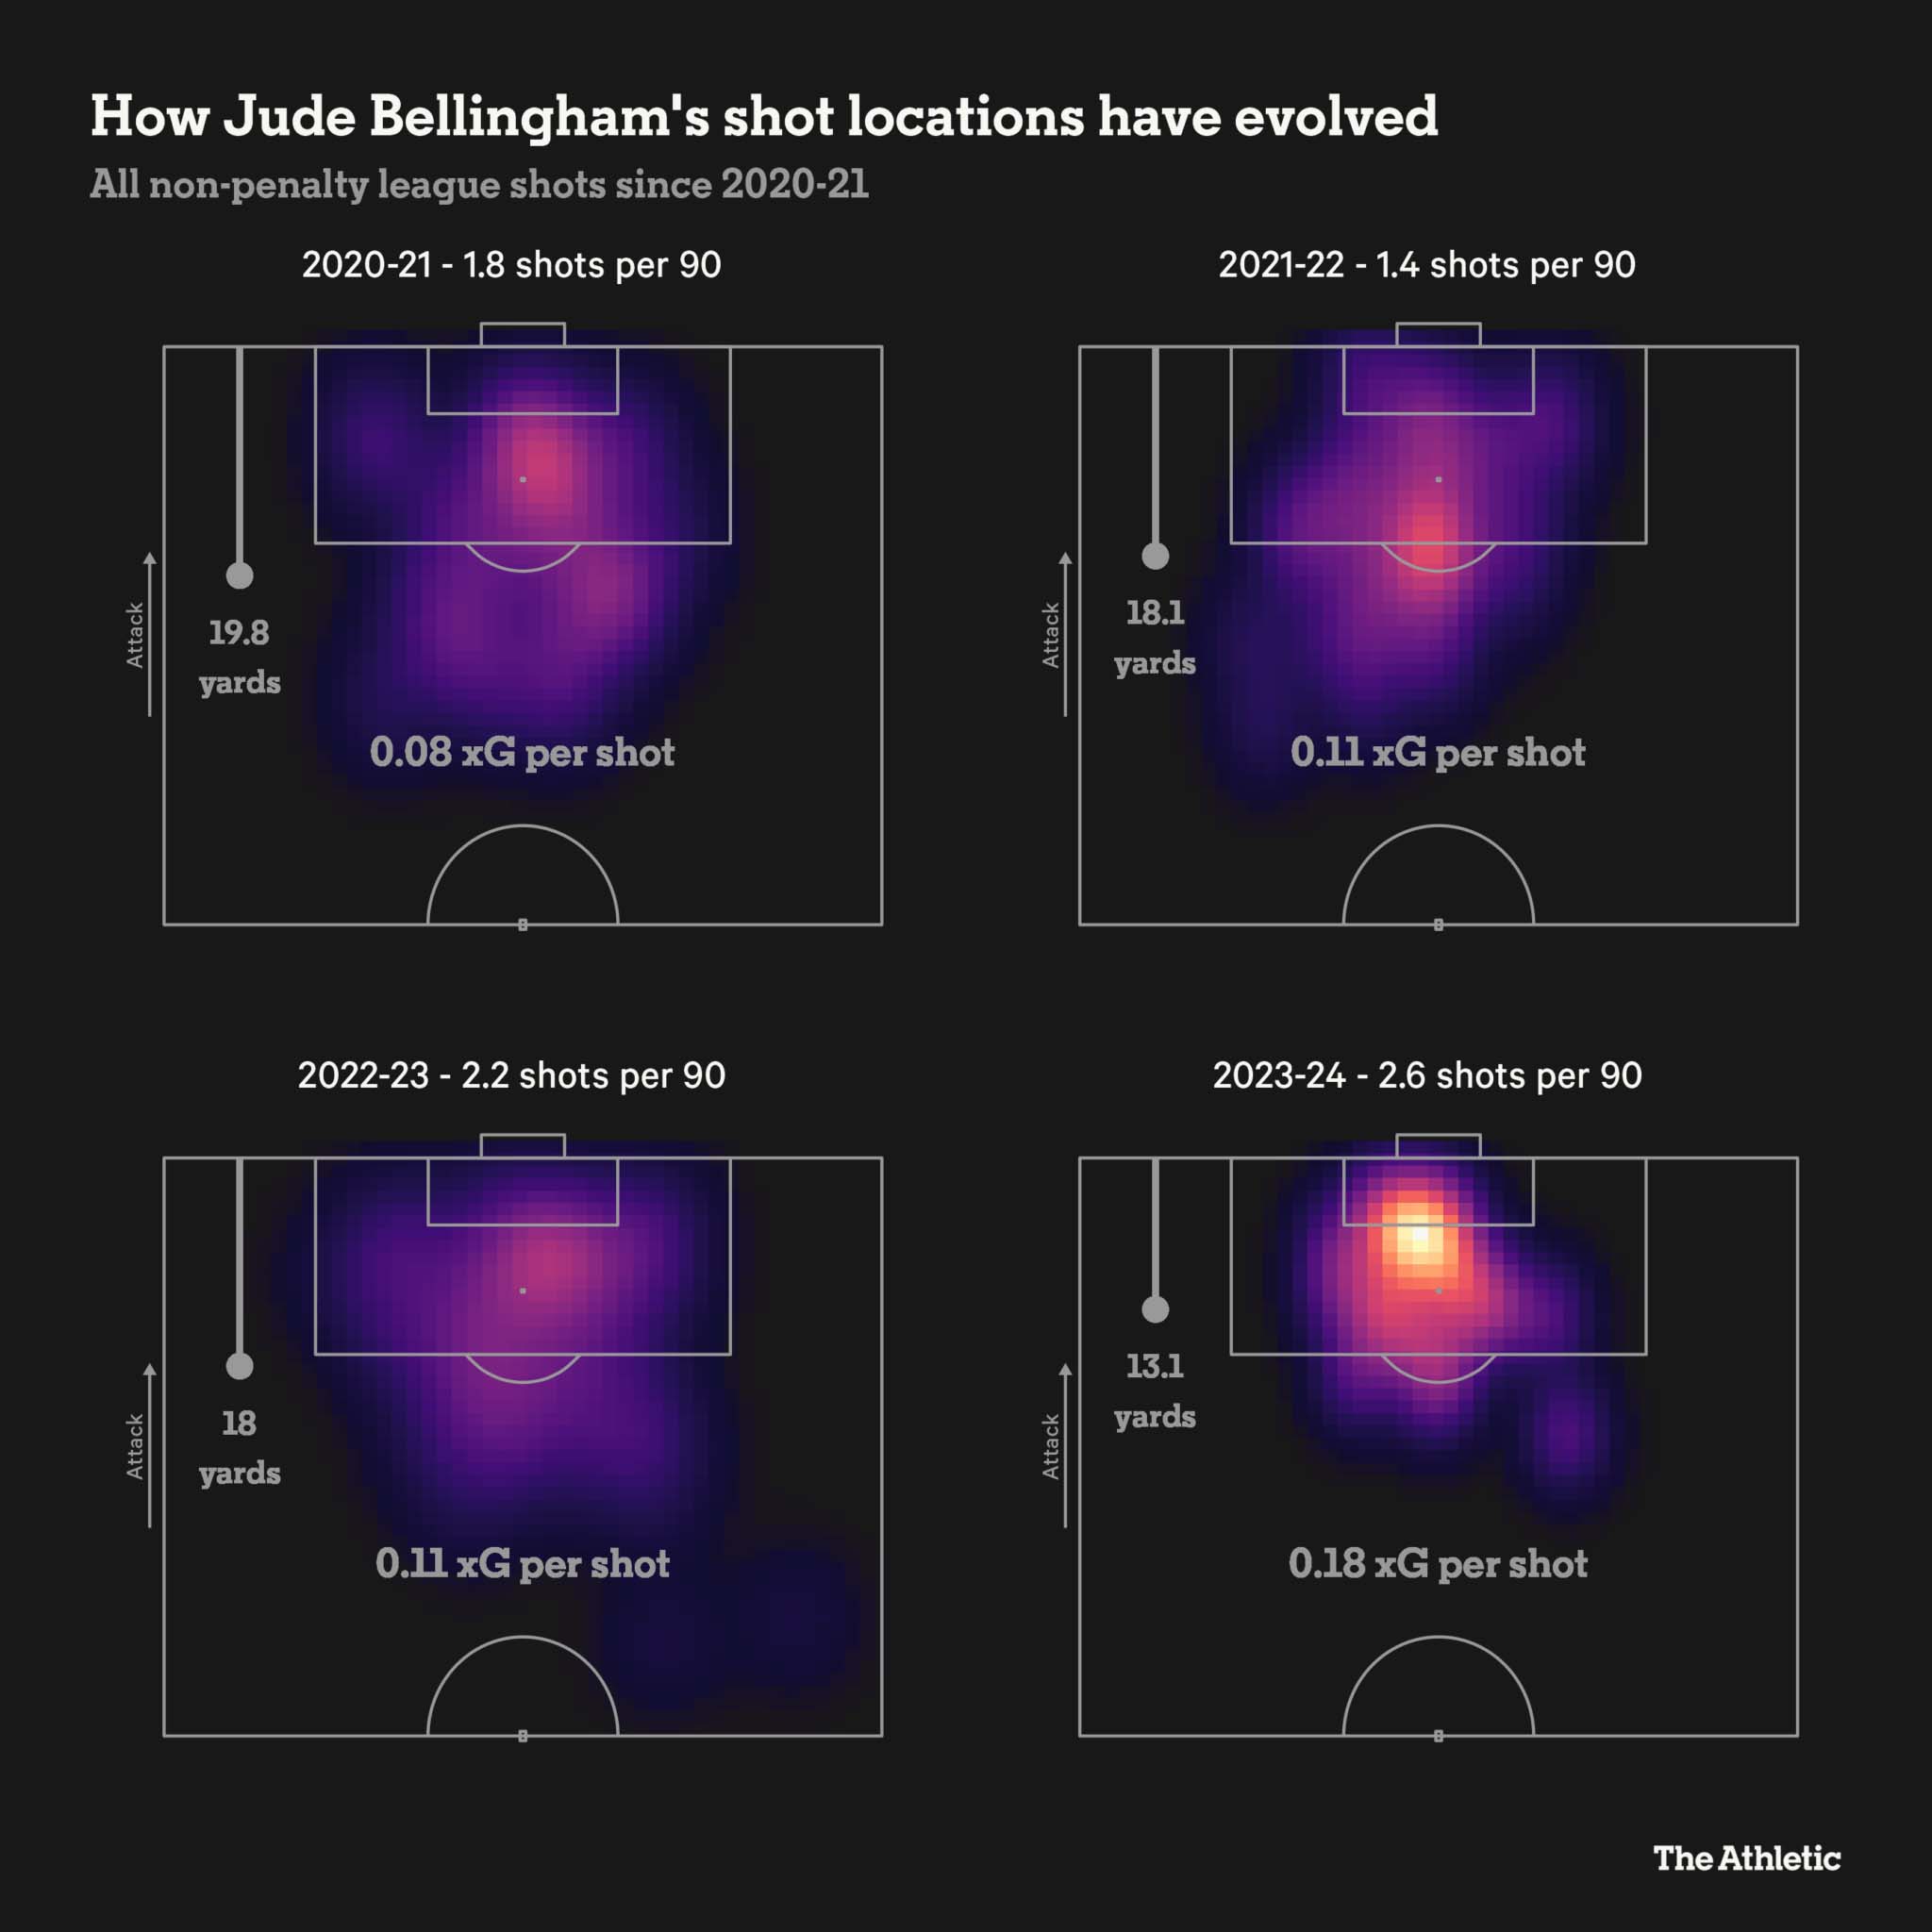 Số bàn thắng kỳ vọng (xG) của Jude Bellingham và vị trí thường xuyên chơi trong 4 mùa giải gần nhất.